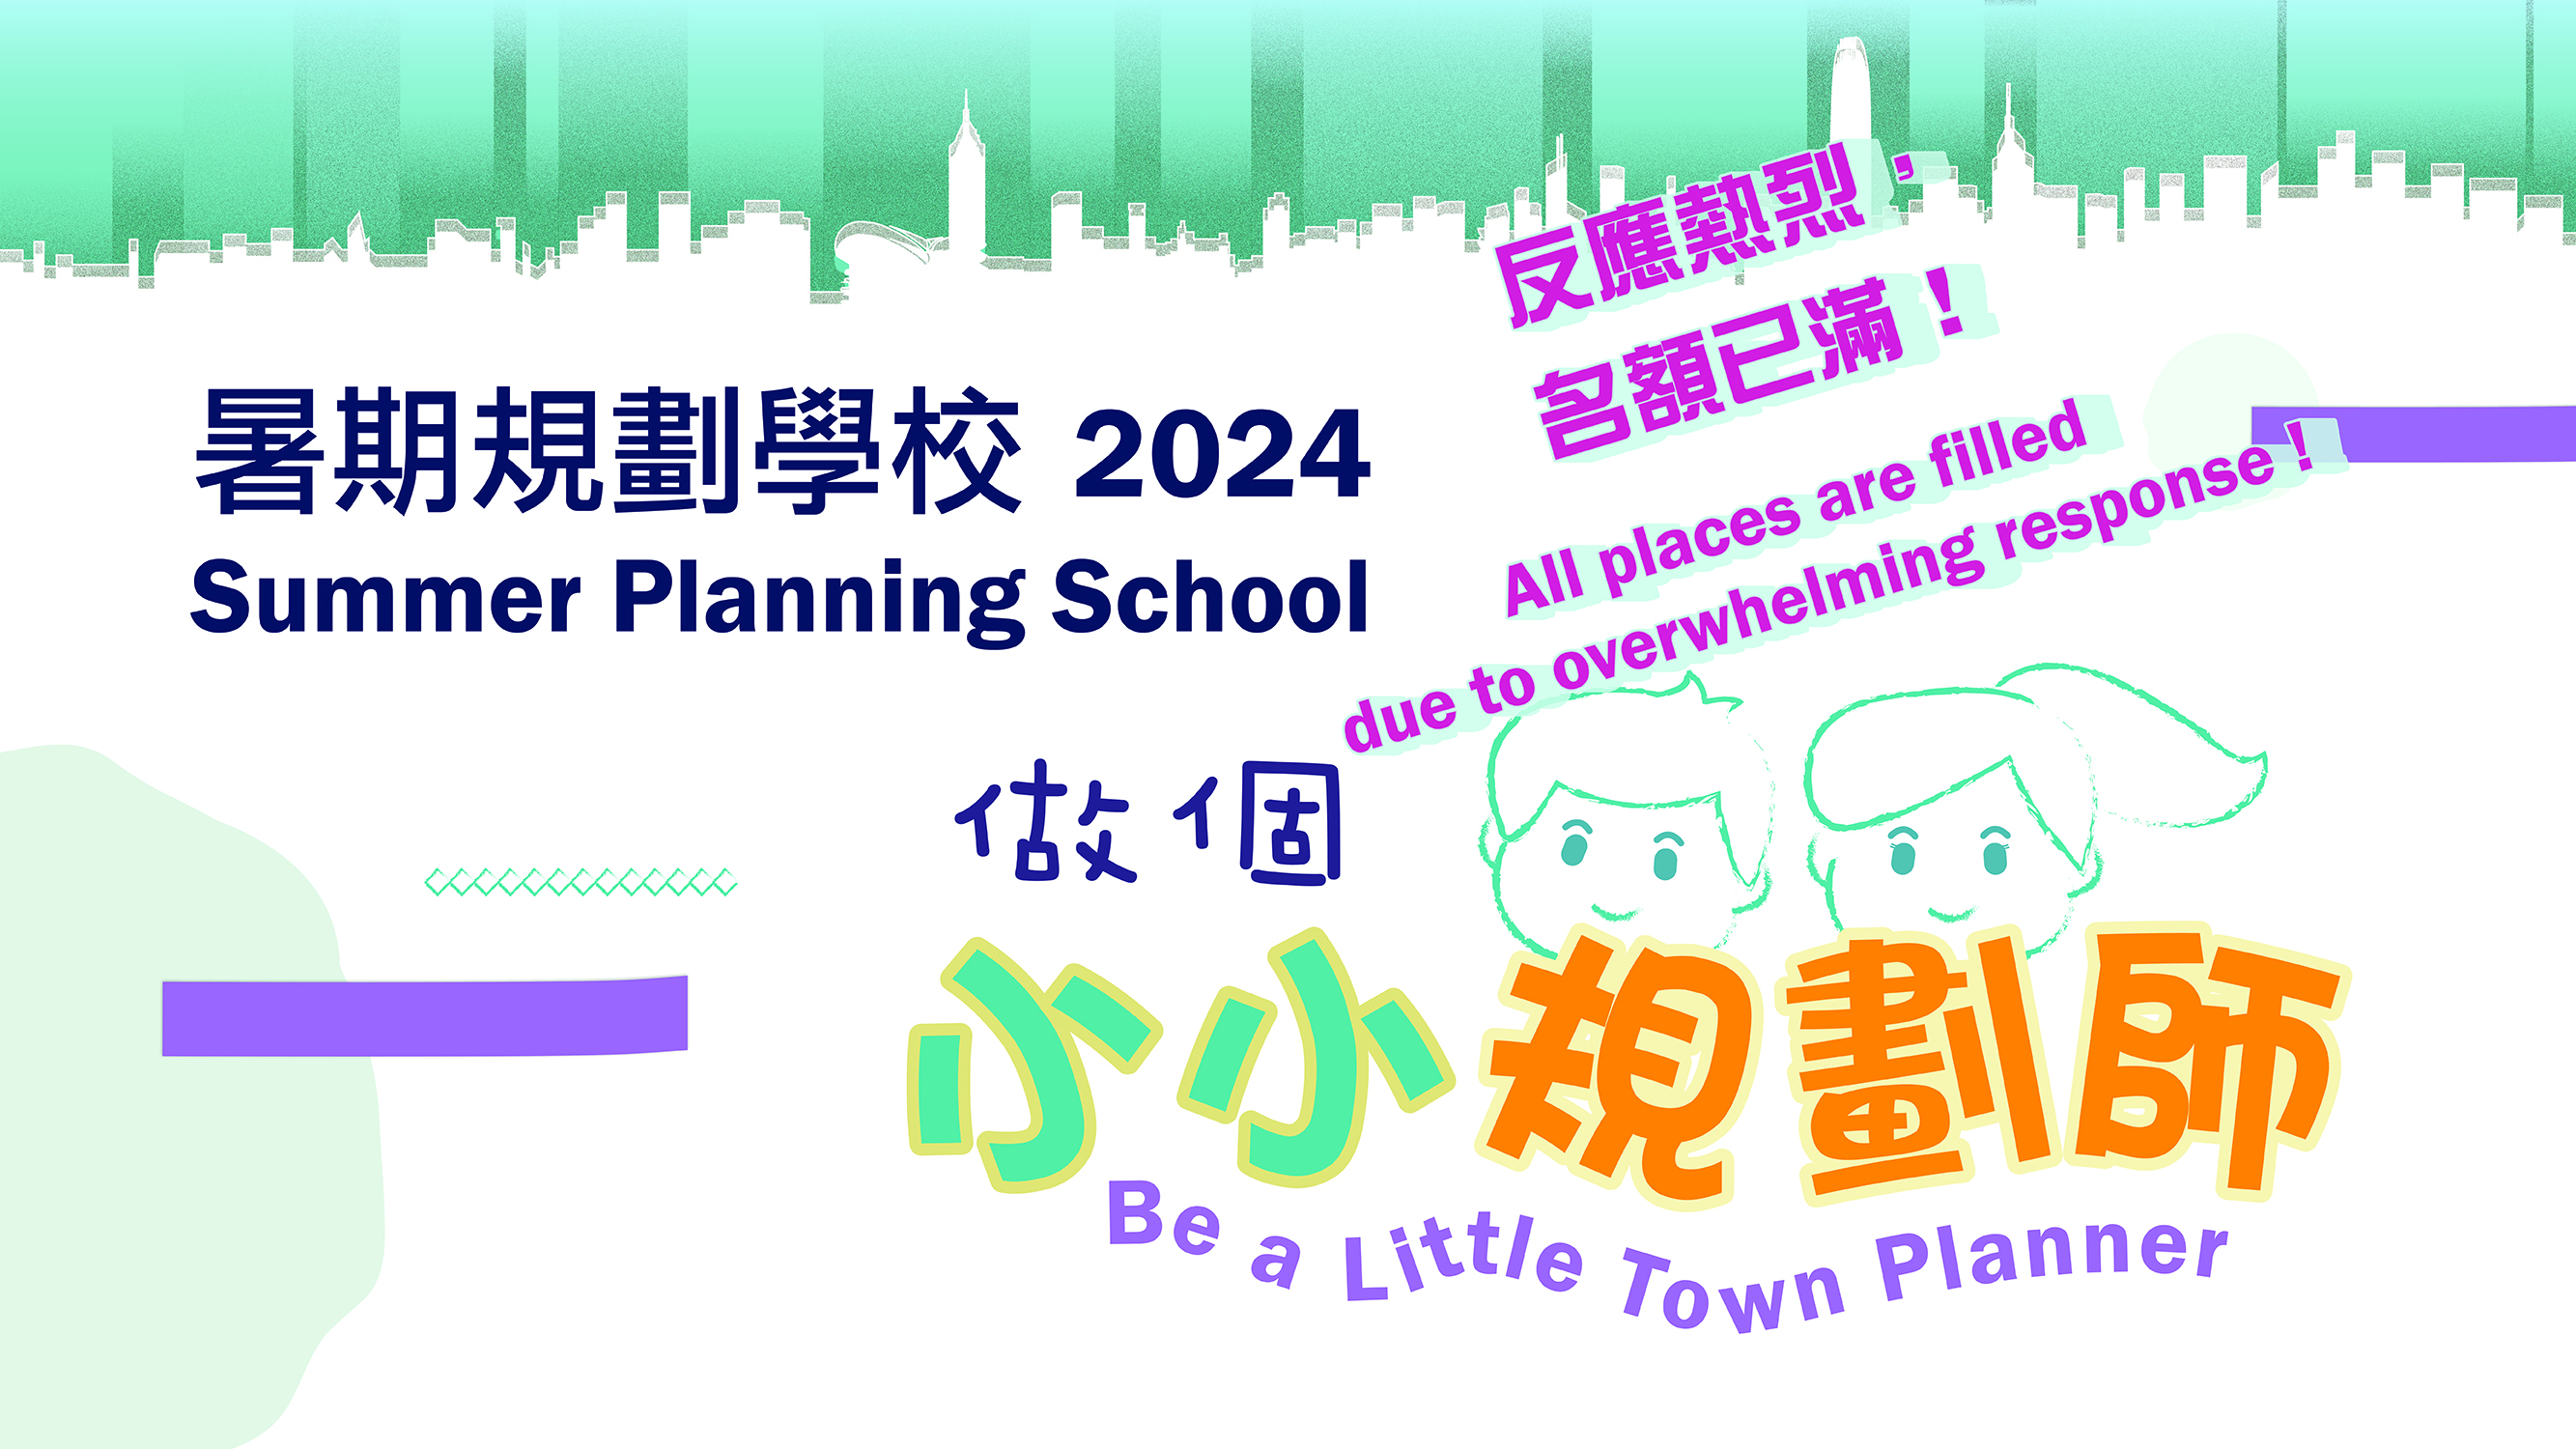 "Be a Little Town Planner" Summer Planning School 2024